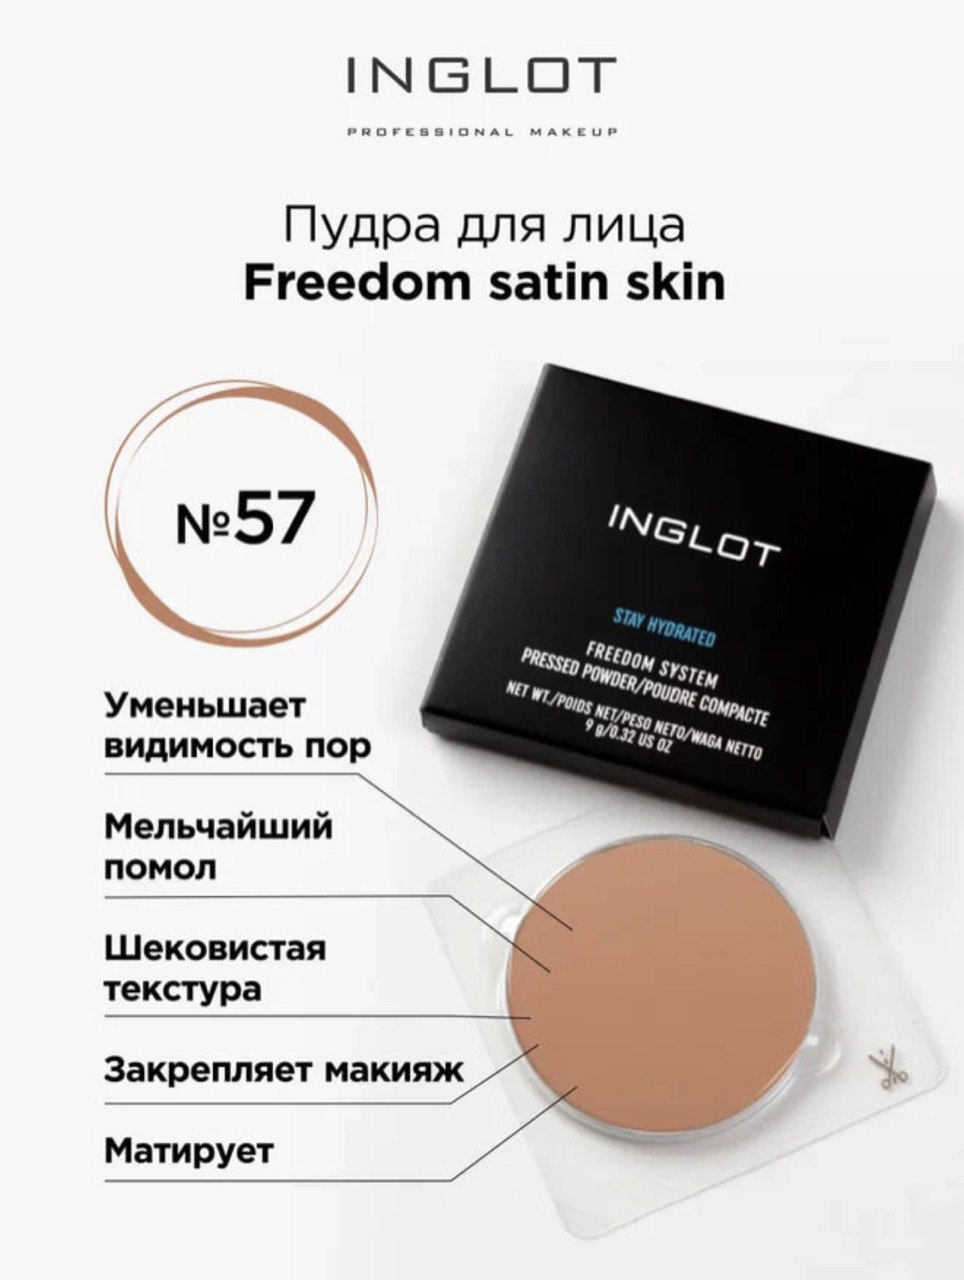 Пудра для лица Inglot компактная сатиновая Freedom satin skin 57